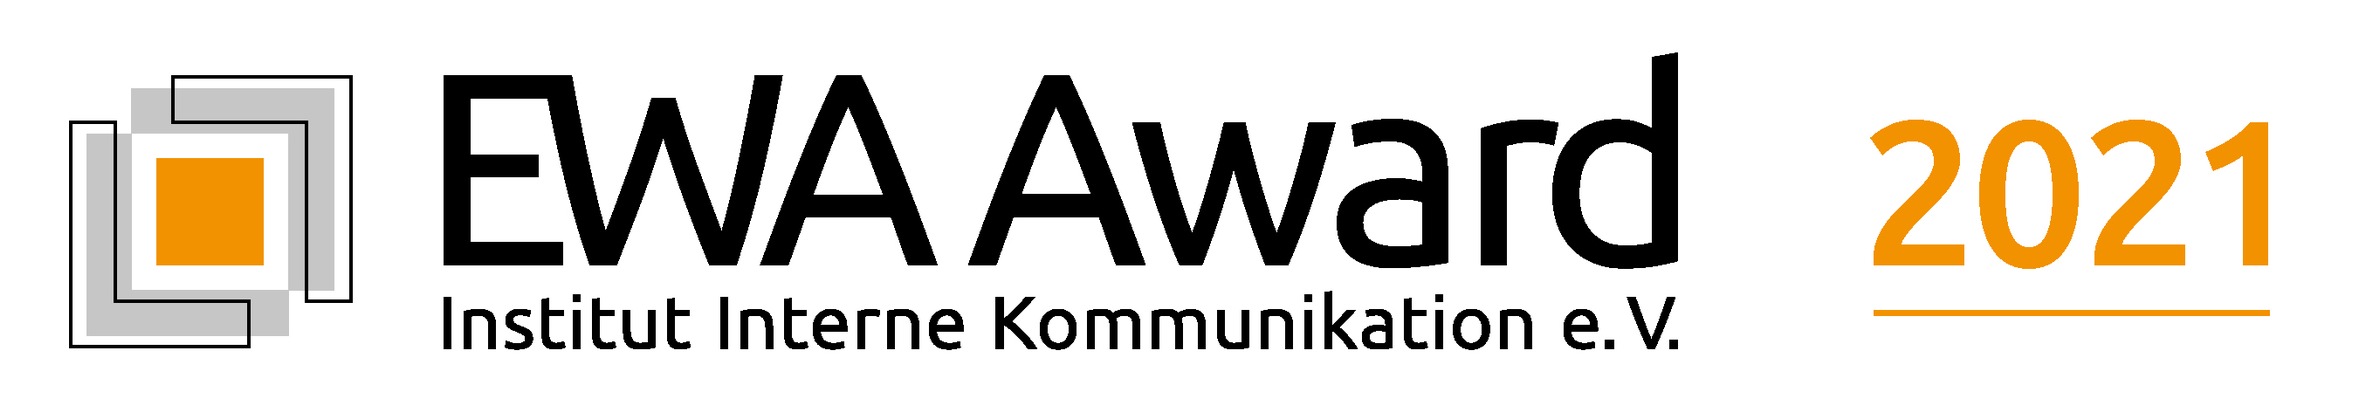 EWA Award verstärkt die Online-Jury / Aber auch neue Gesichter für Print und Konzepte / Ziel: Noch höhere Qualität und Urteilstiefe